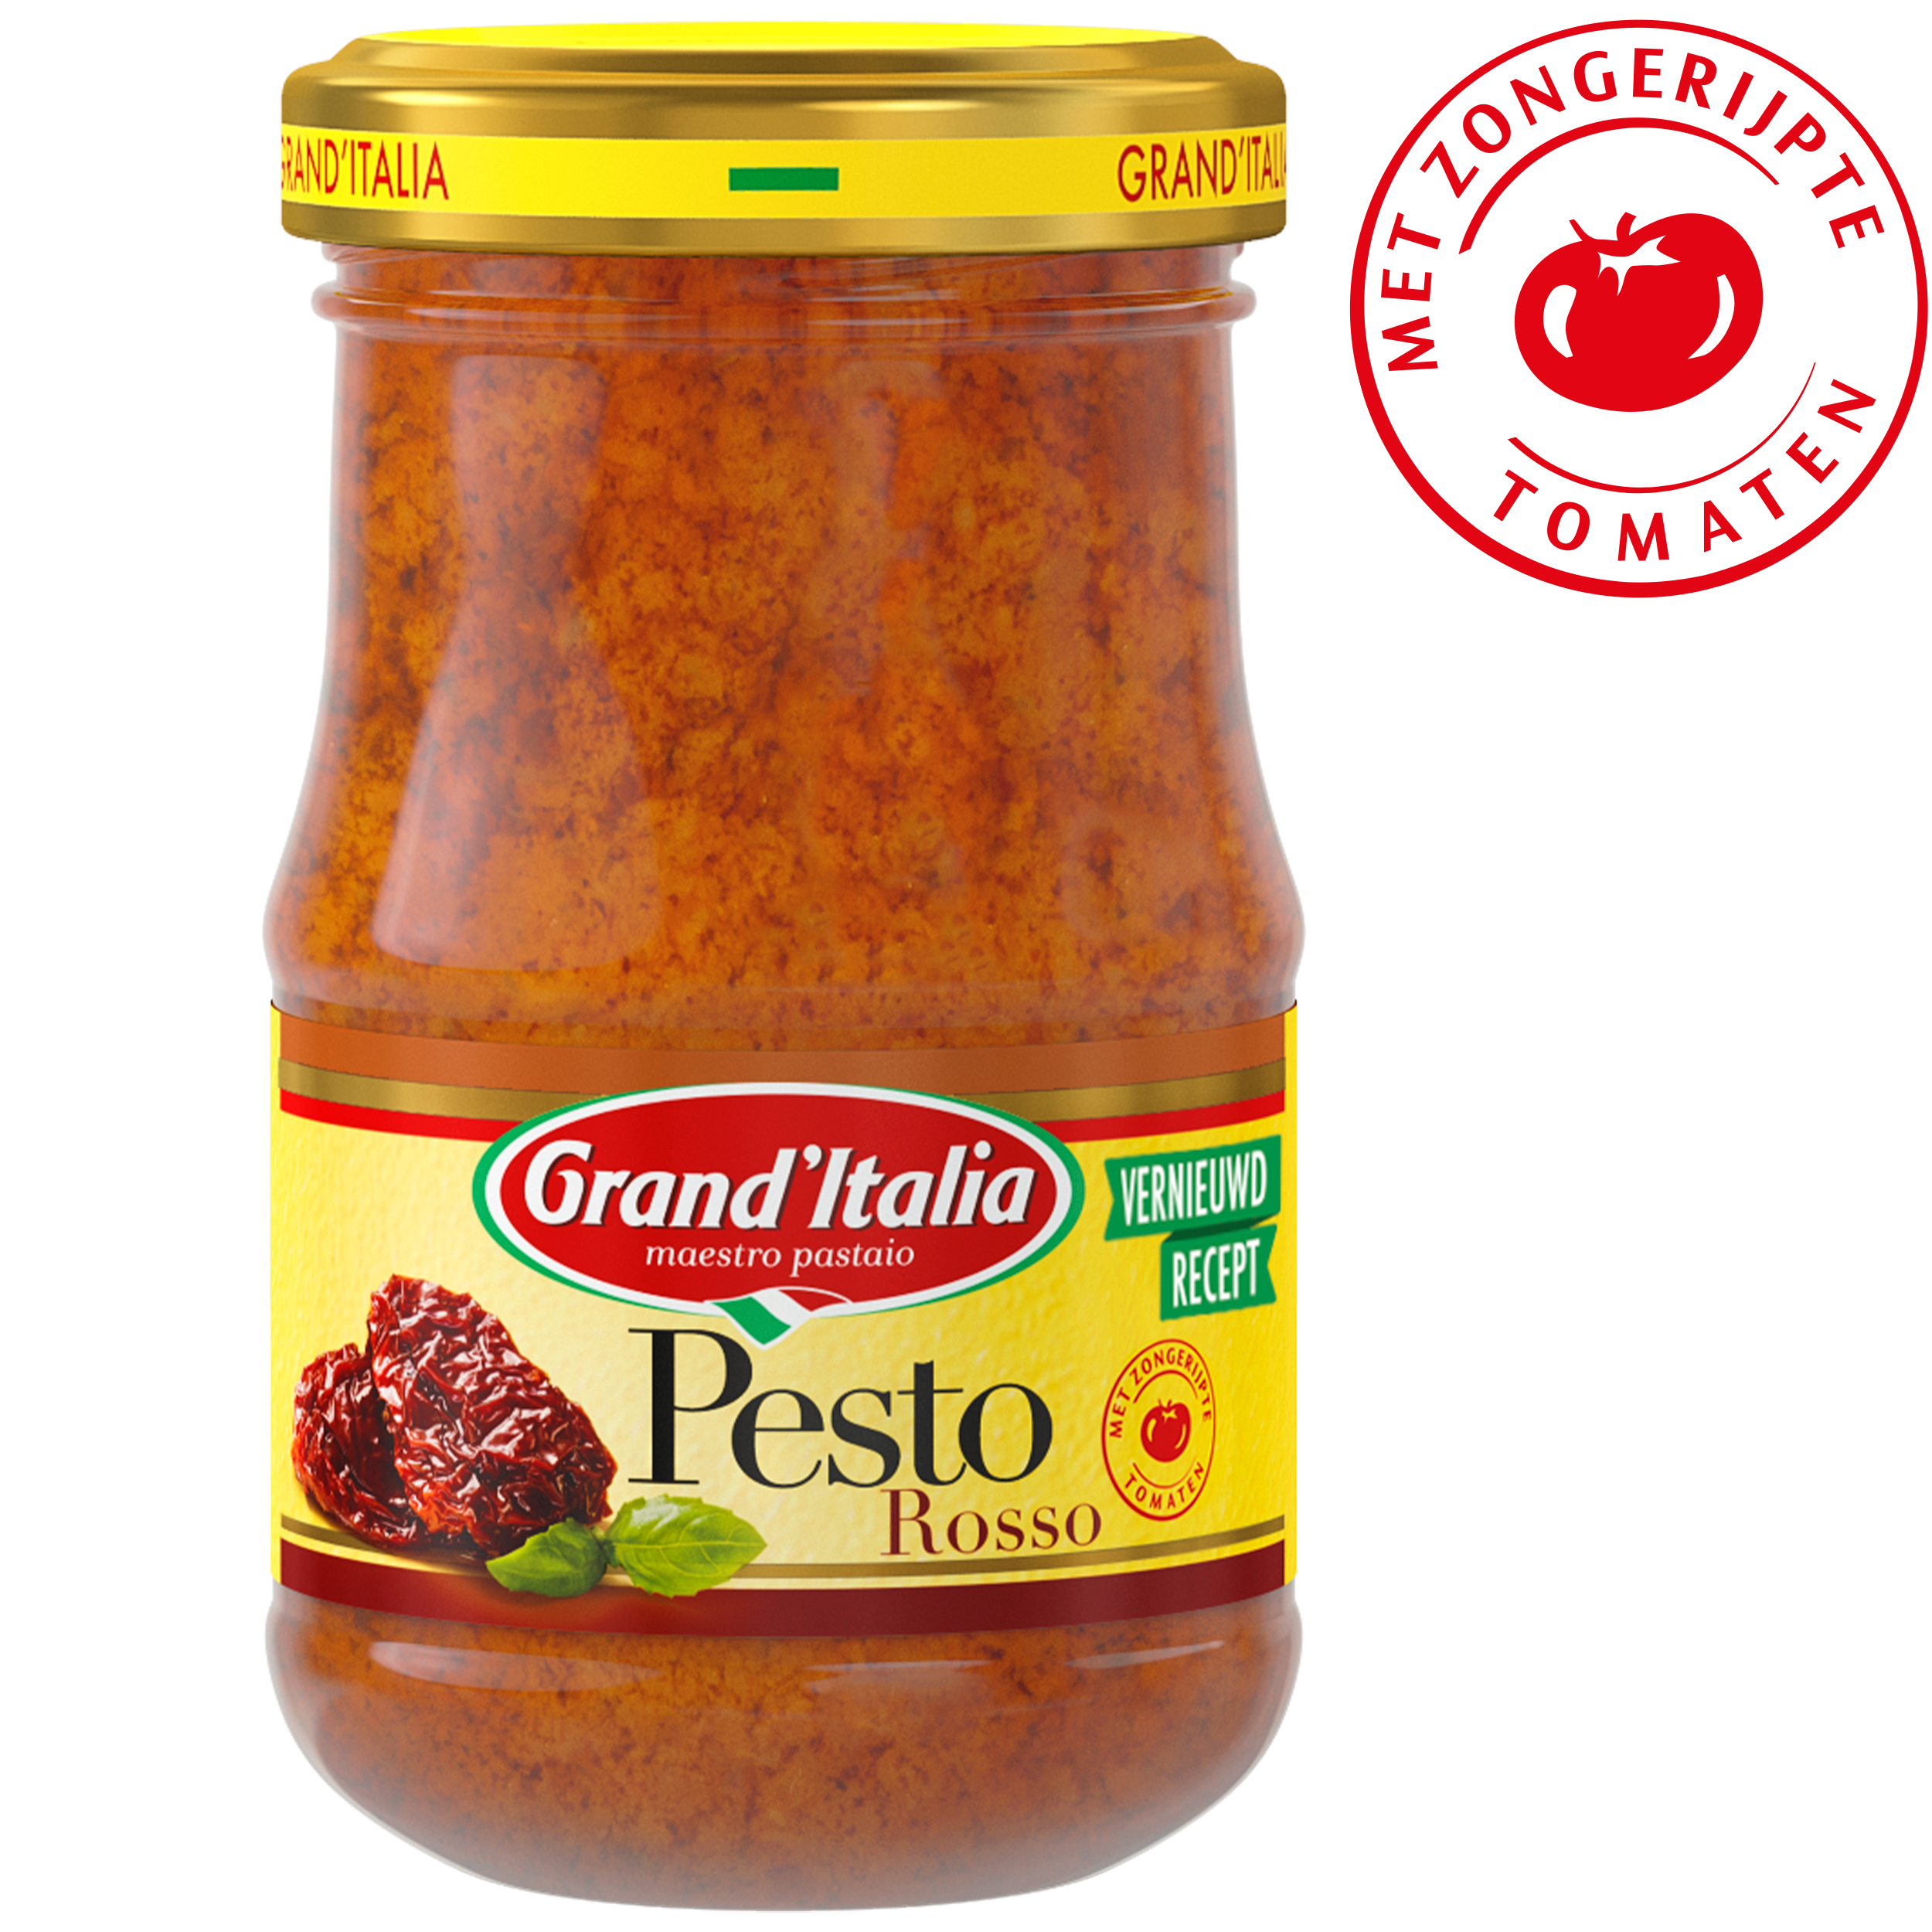 Pesto Rosso 90g Grand'Italia - claim